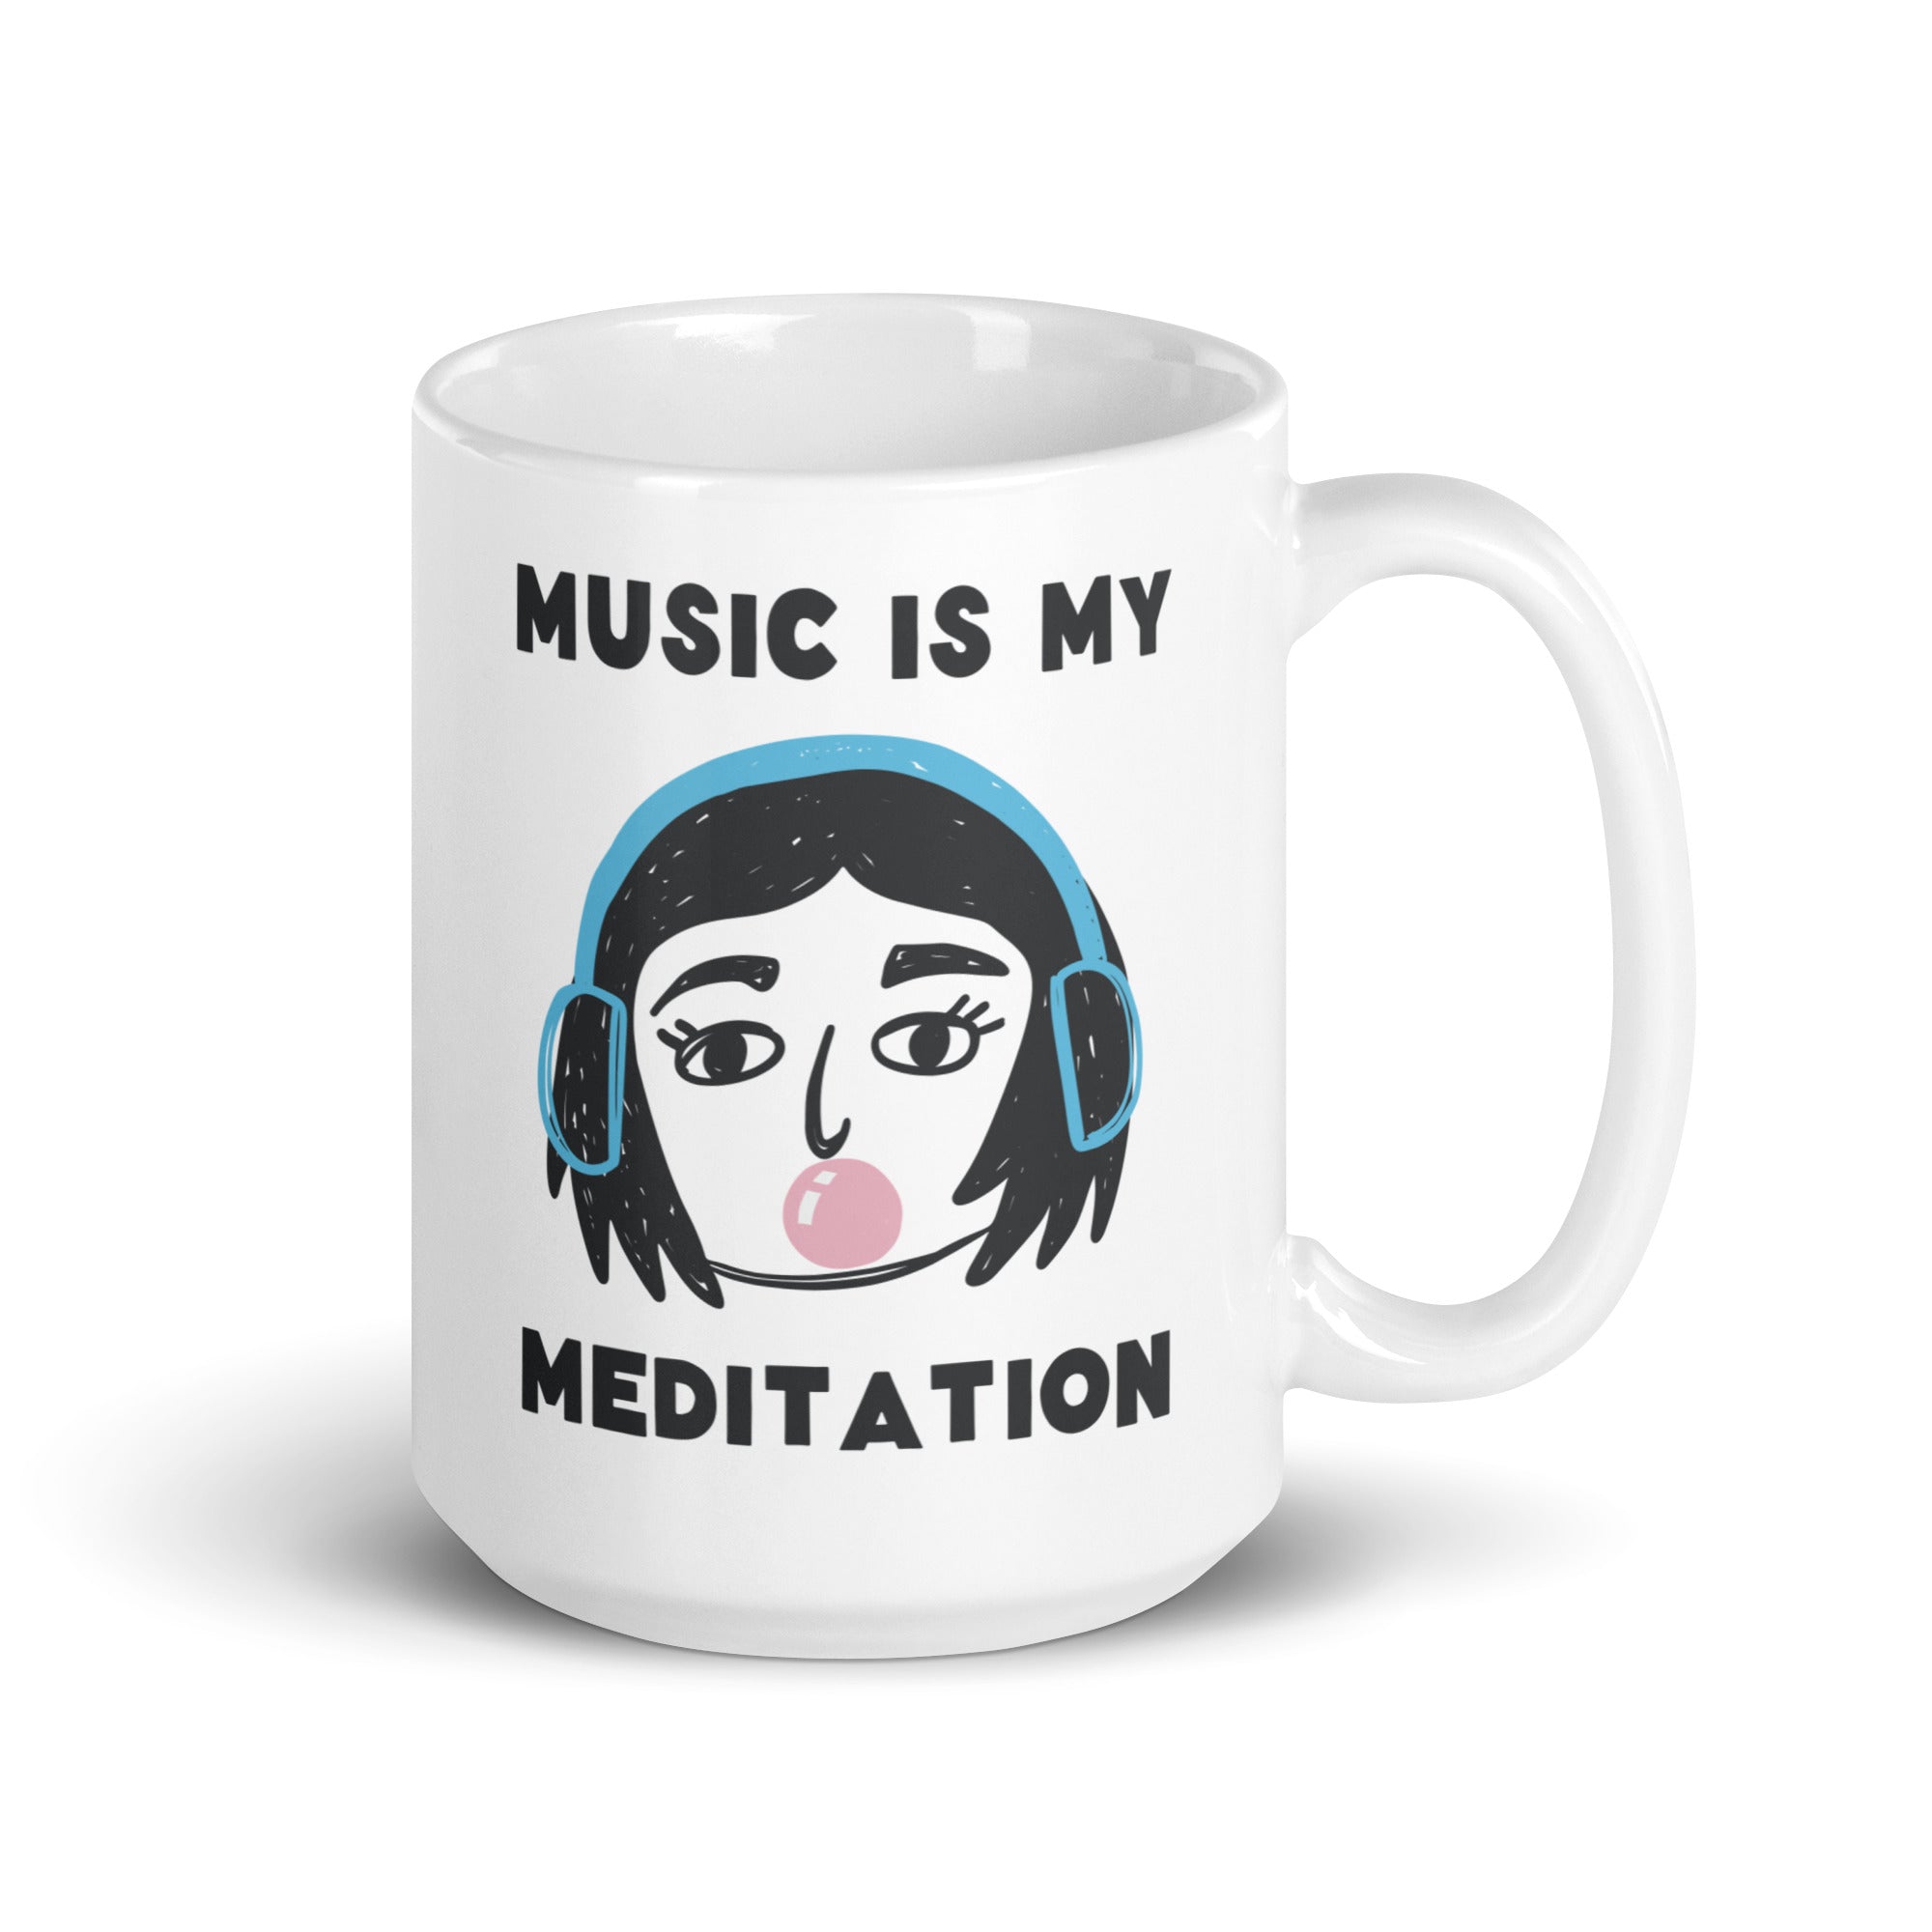 Meditation - Mug